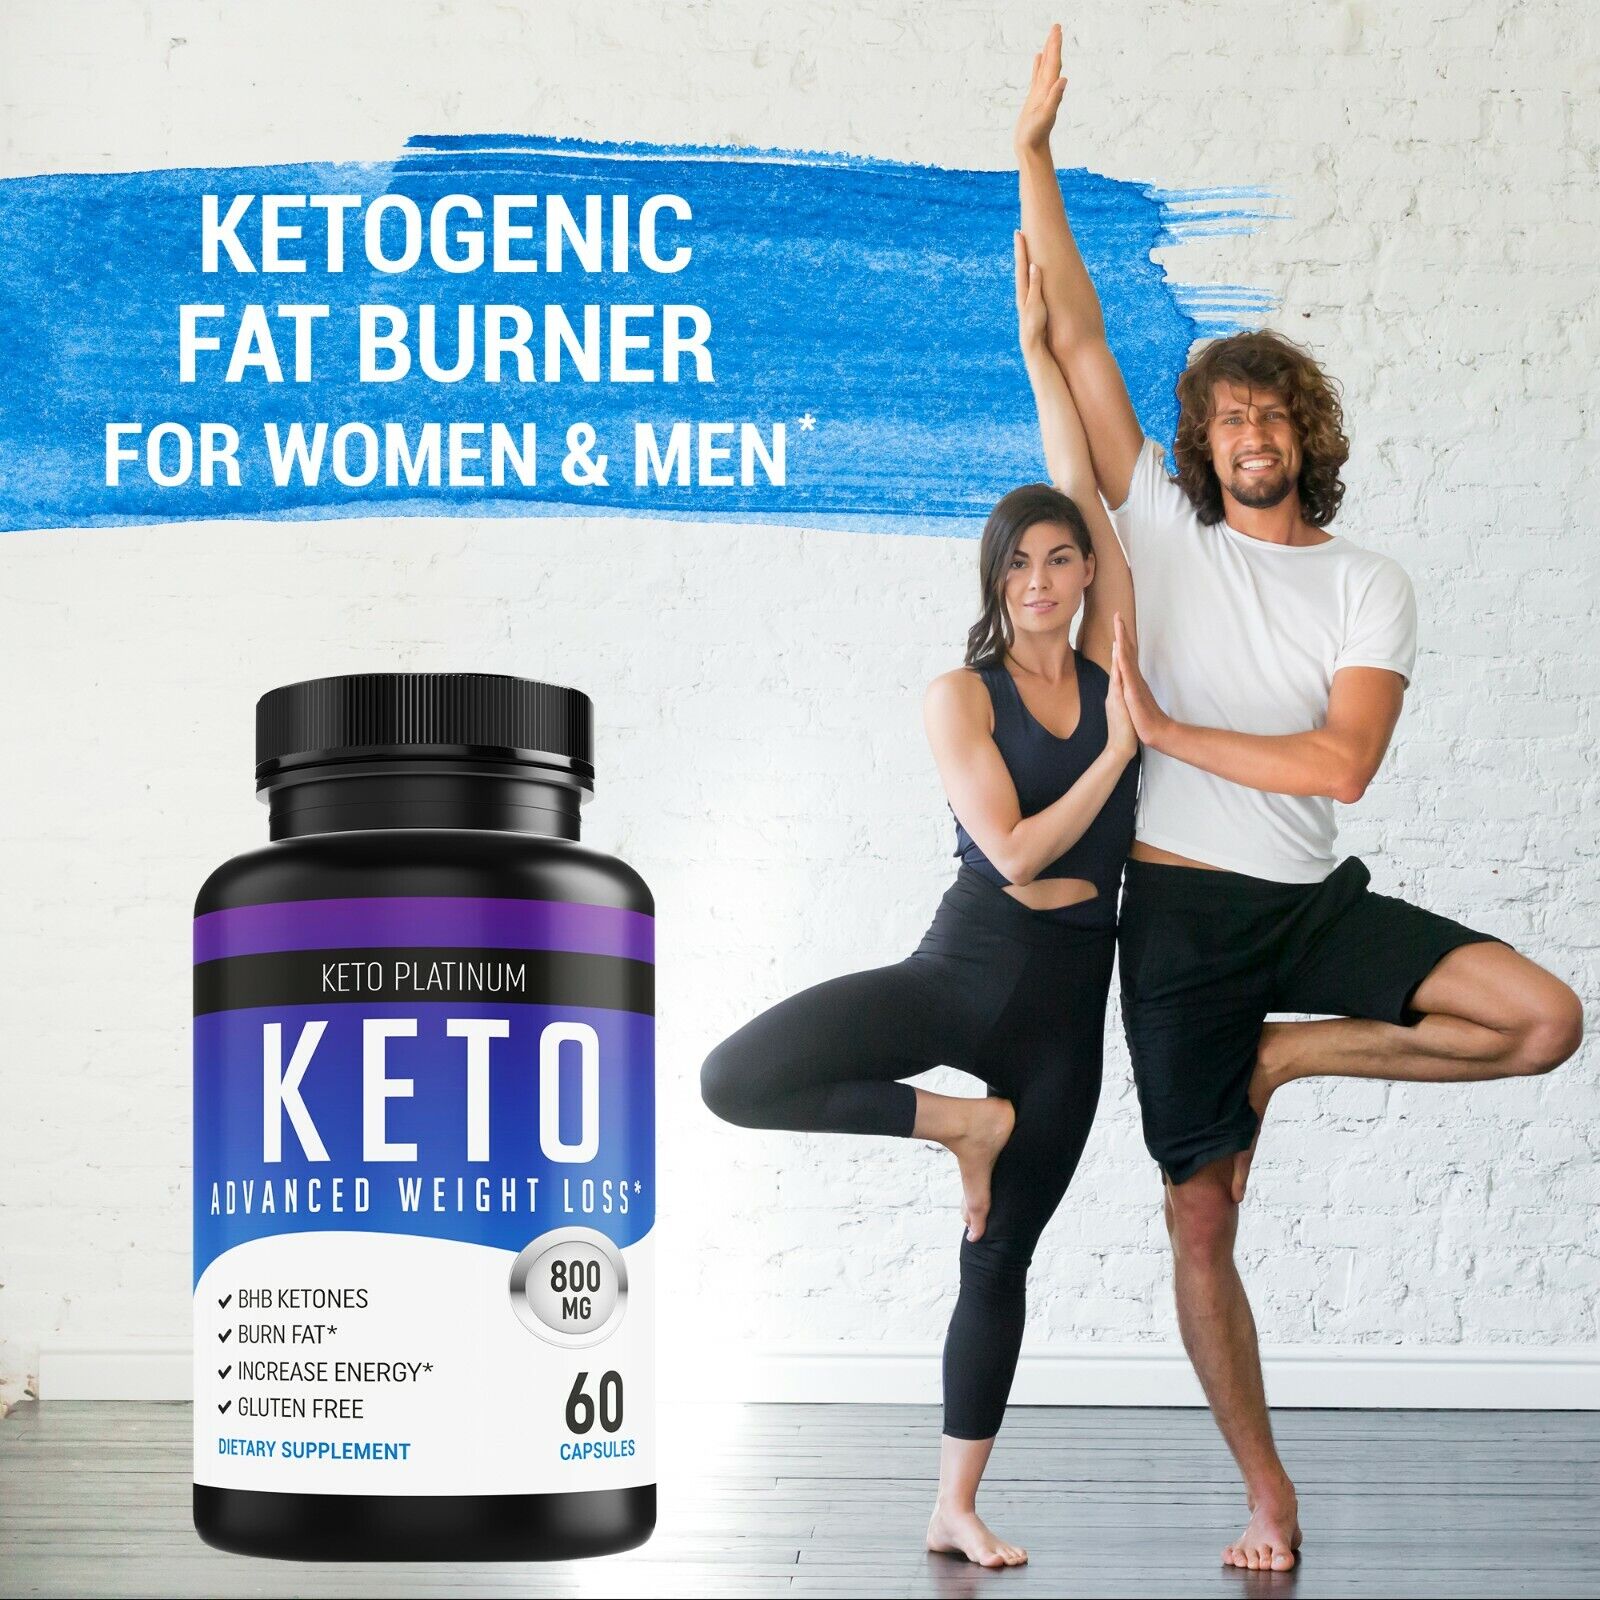 Shark Tank Keto Diet Pills - Weight Loss Fat Burner Supplement for Women & Men 